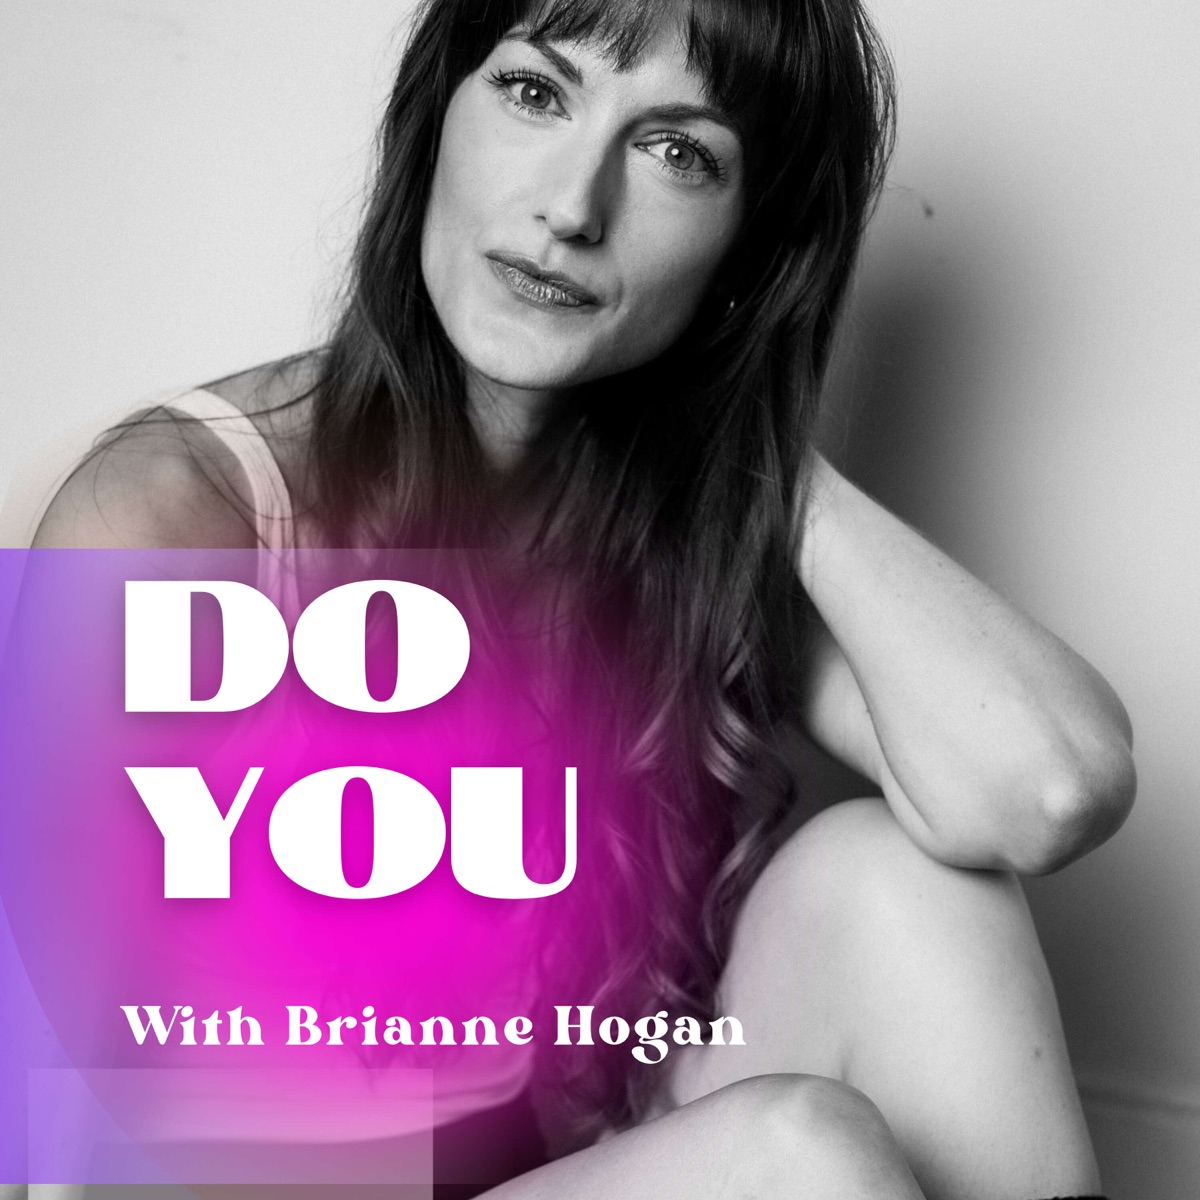 Amy Reid Sexy - DO YOU with Brianne Hogan â€“ Podcast â€“ Podtail